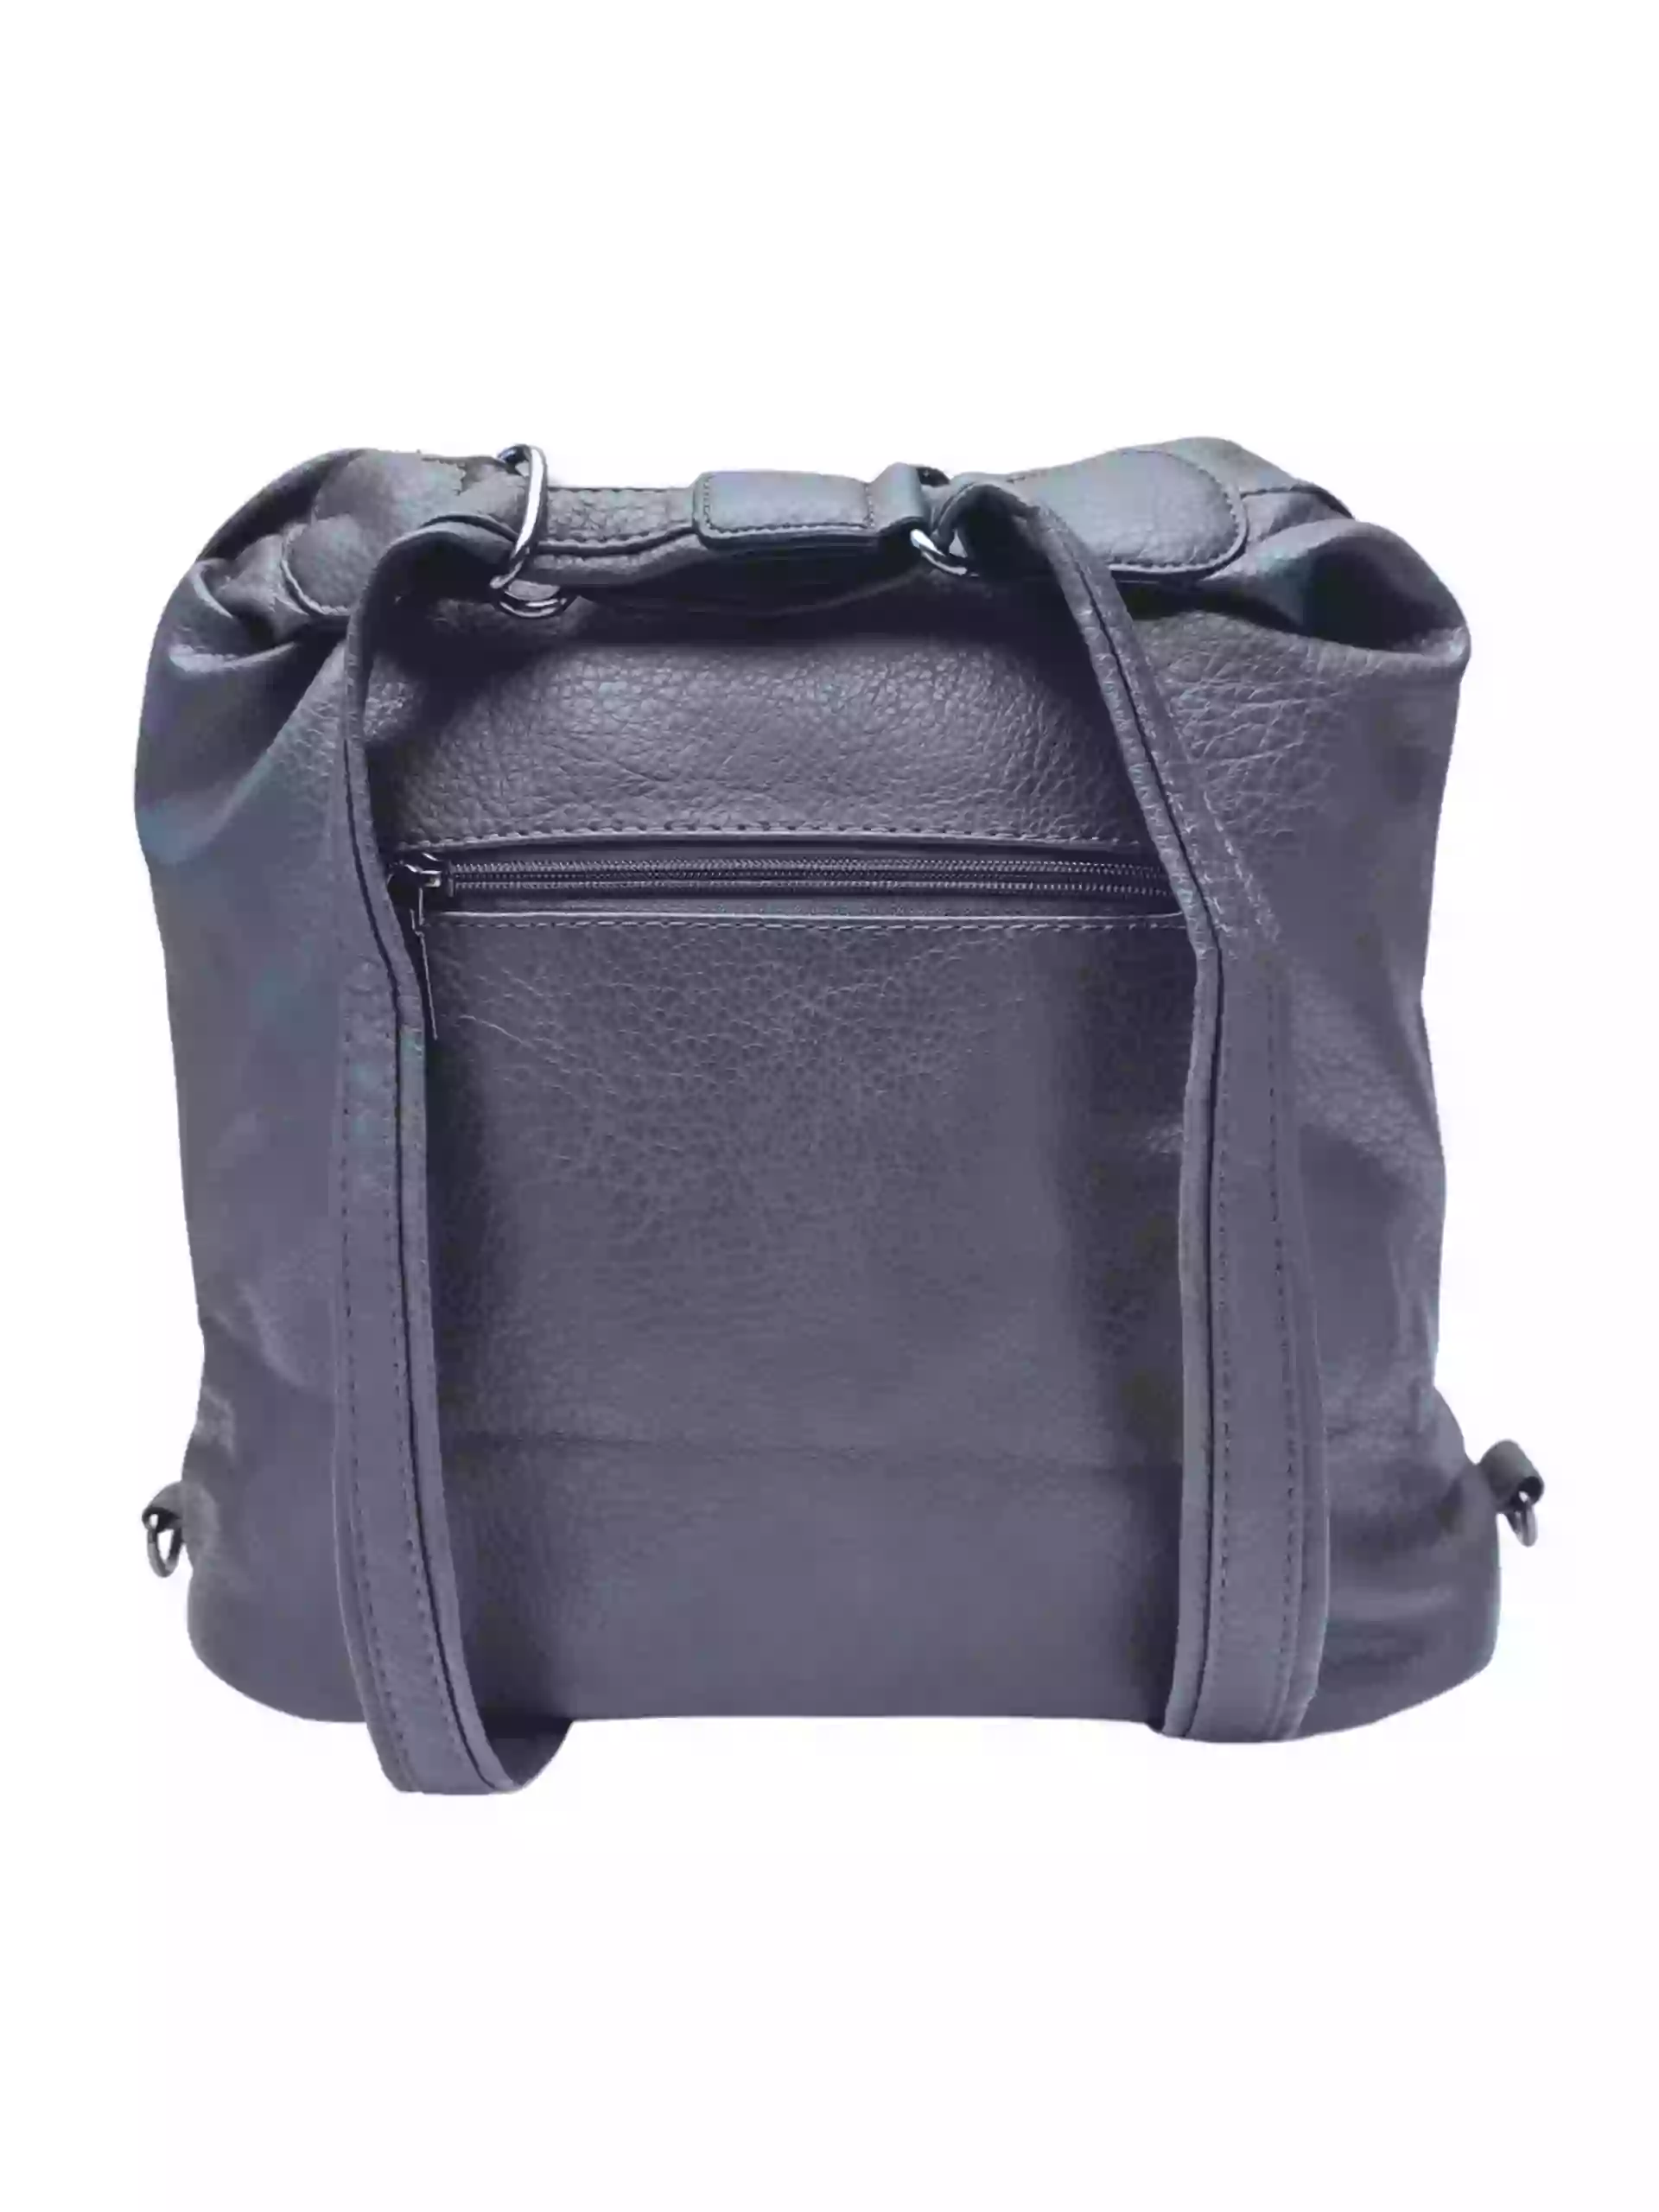 Velký středně šedý kabelko-batoh 2v1 s praktickými kapsami, Miss Moda, 980953, zadní strana kabelko-batohu 2v1 s popruhy